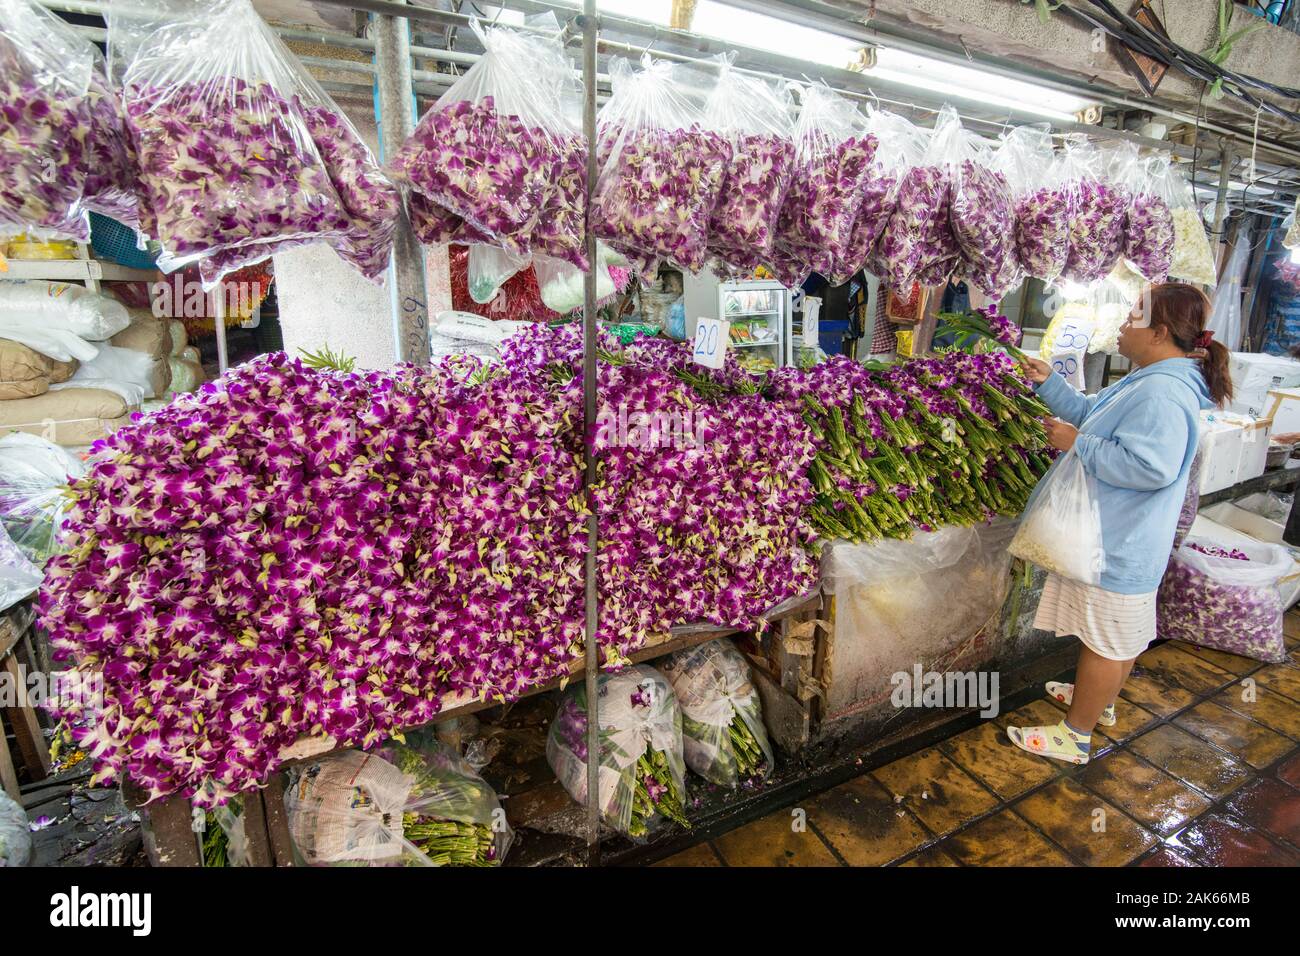 Des fleurs fraîches au marché aux fleurs de la Tha Klang marché dans la ville de Bangkok en Thaïlande en Asie Southest. Thaïlande, Bangkok, novembre, 2019 Banque D'Images